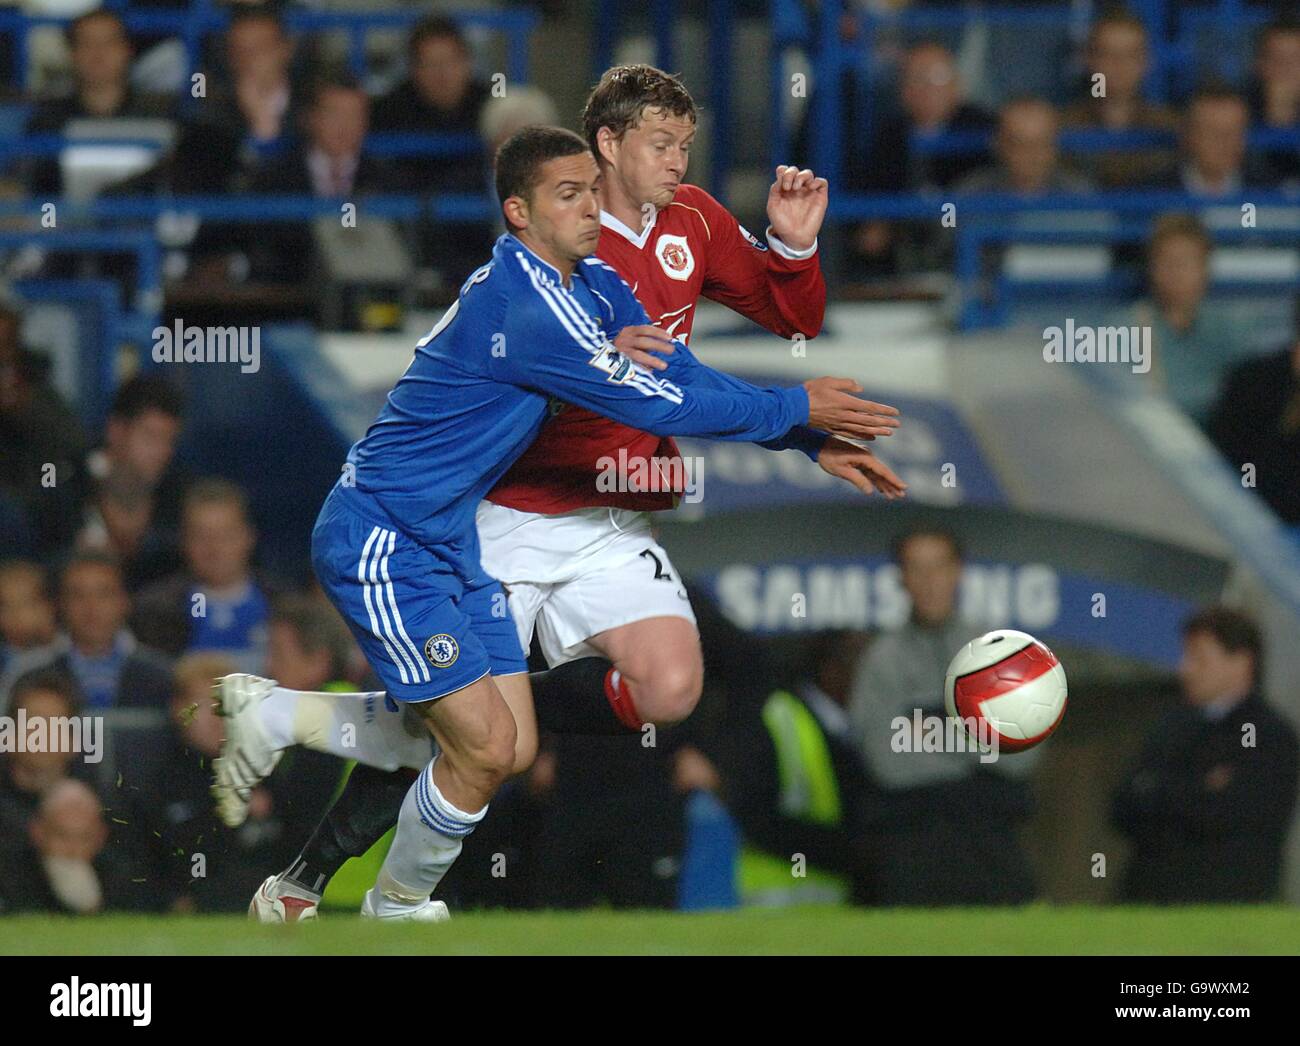 Manchester United's Ole Gunnar Solskjaer and Chelsea's Ben Sahar battle for the ball Stock Photo